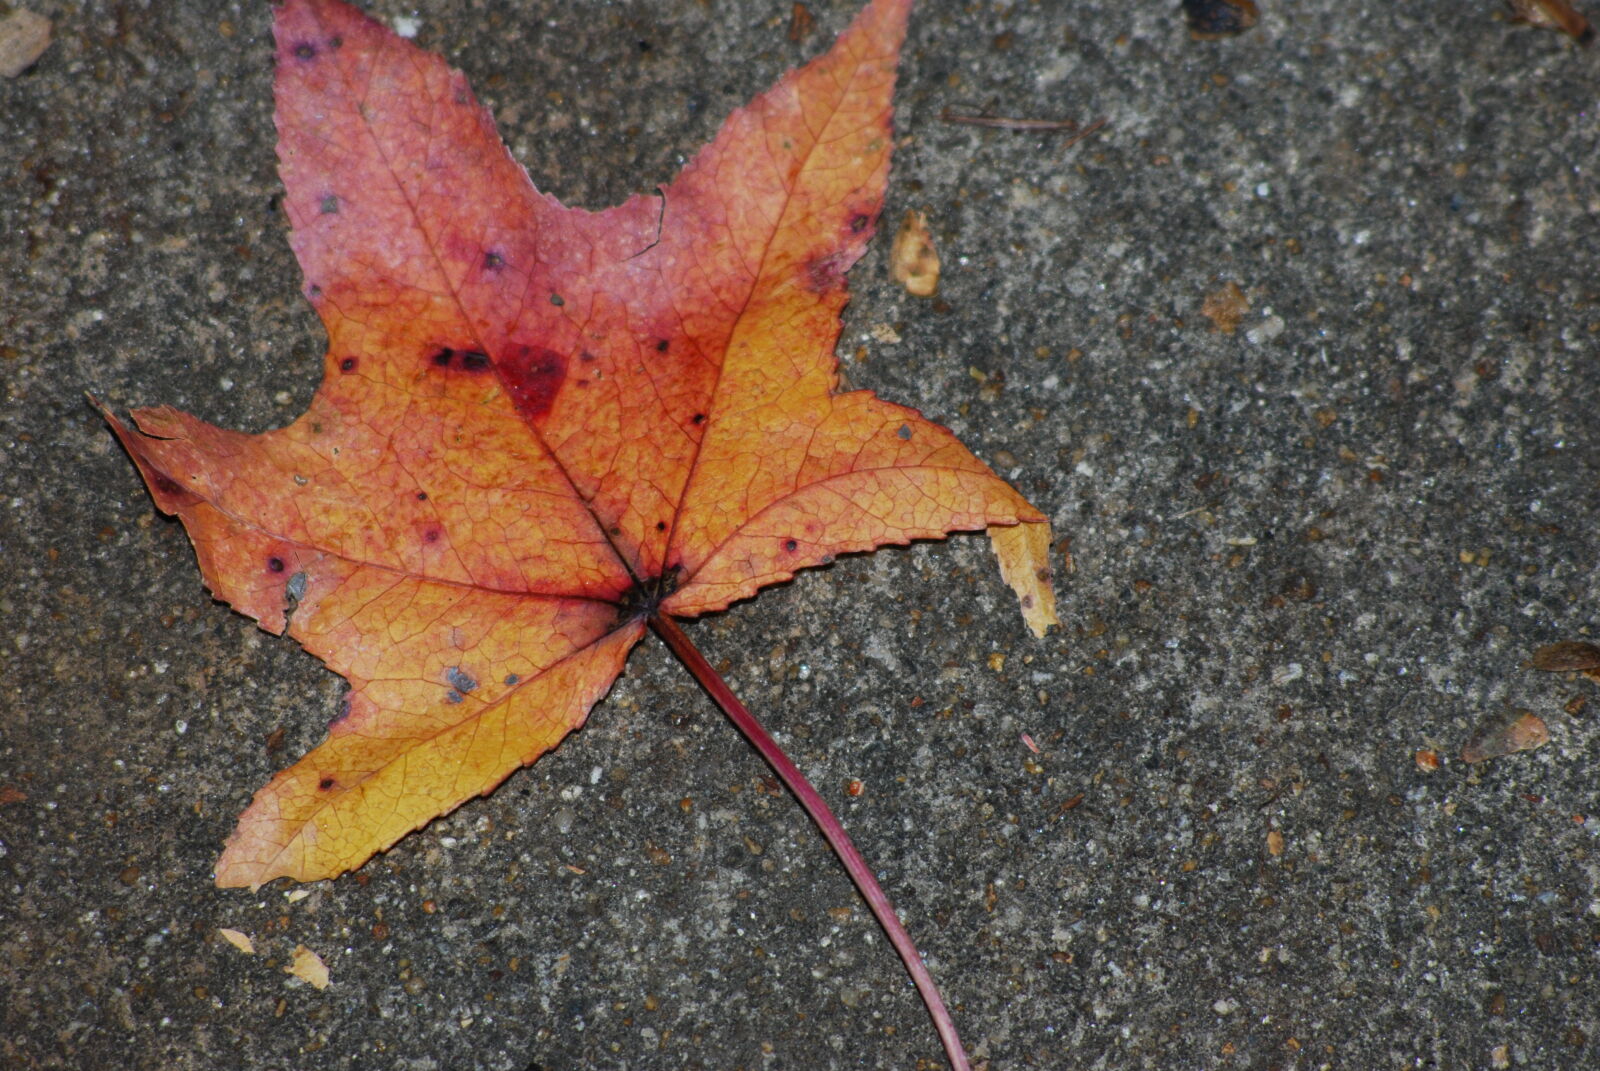 AF Nikkor 70-210mm f/4-5.6 sample photo. Autumn, leaf, fallen, leaves photography